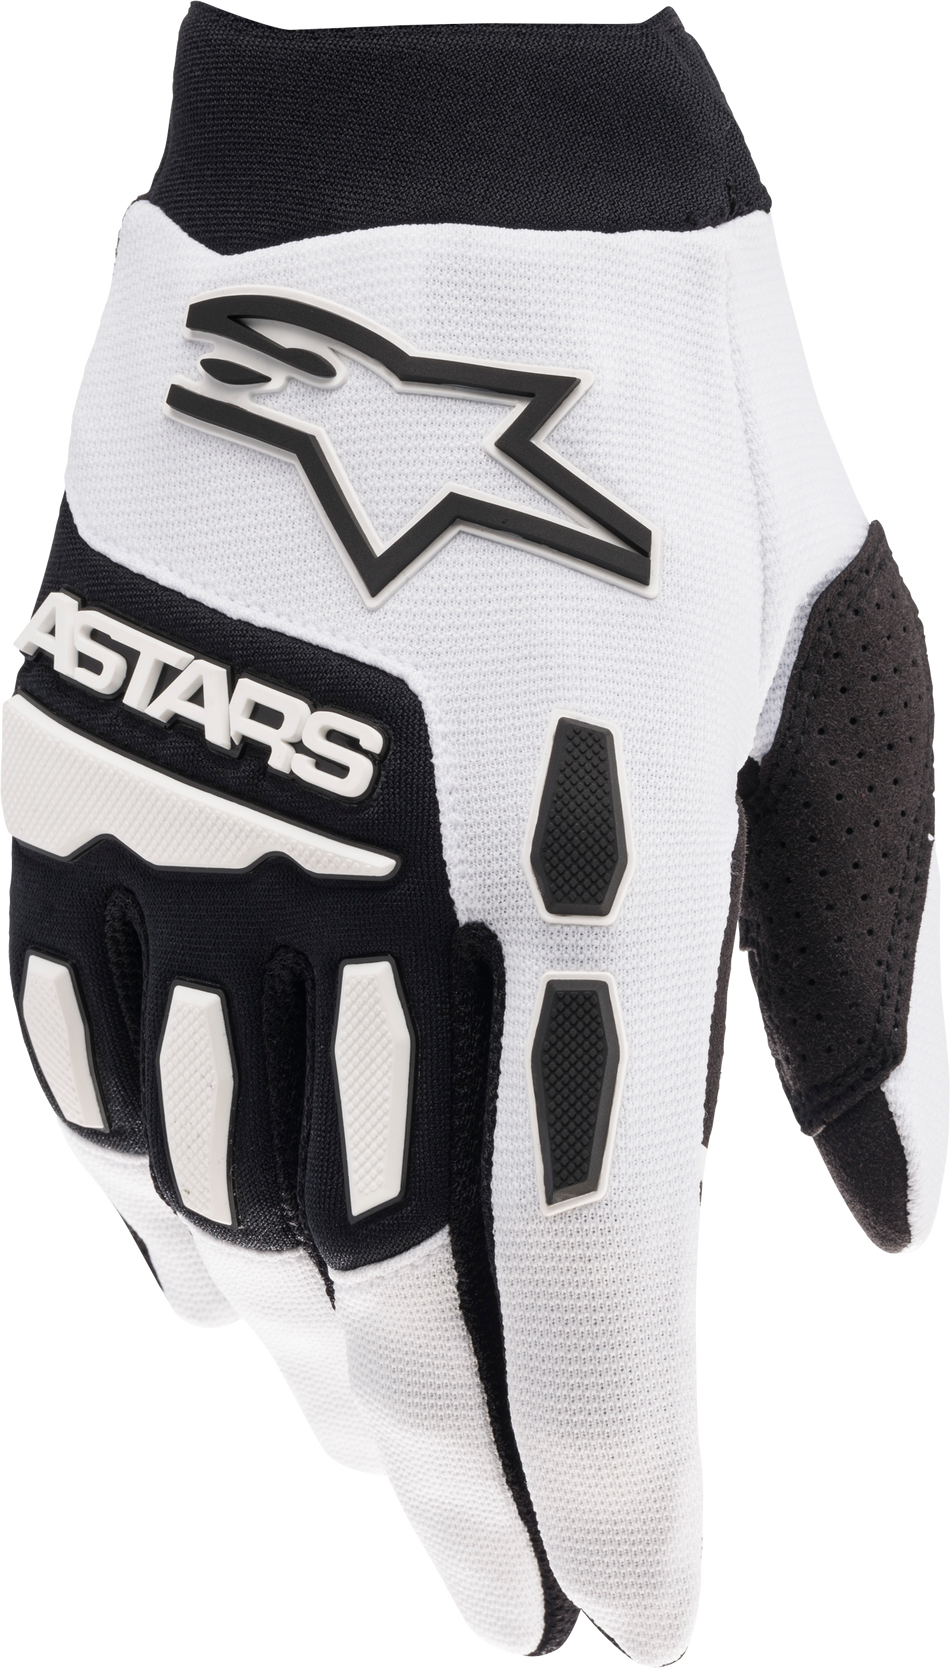 ALPINESTARS Youth Full Bore Gloves White/Black Md 3543622-21-M